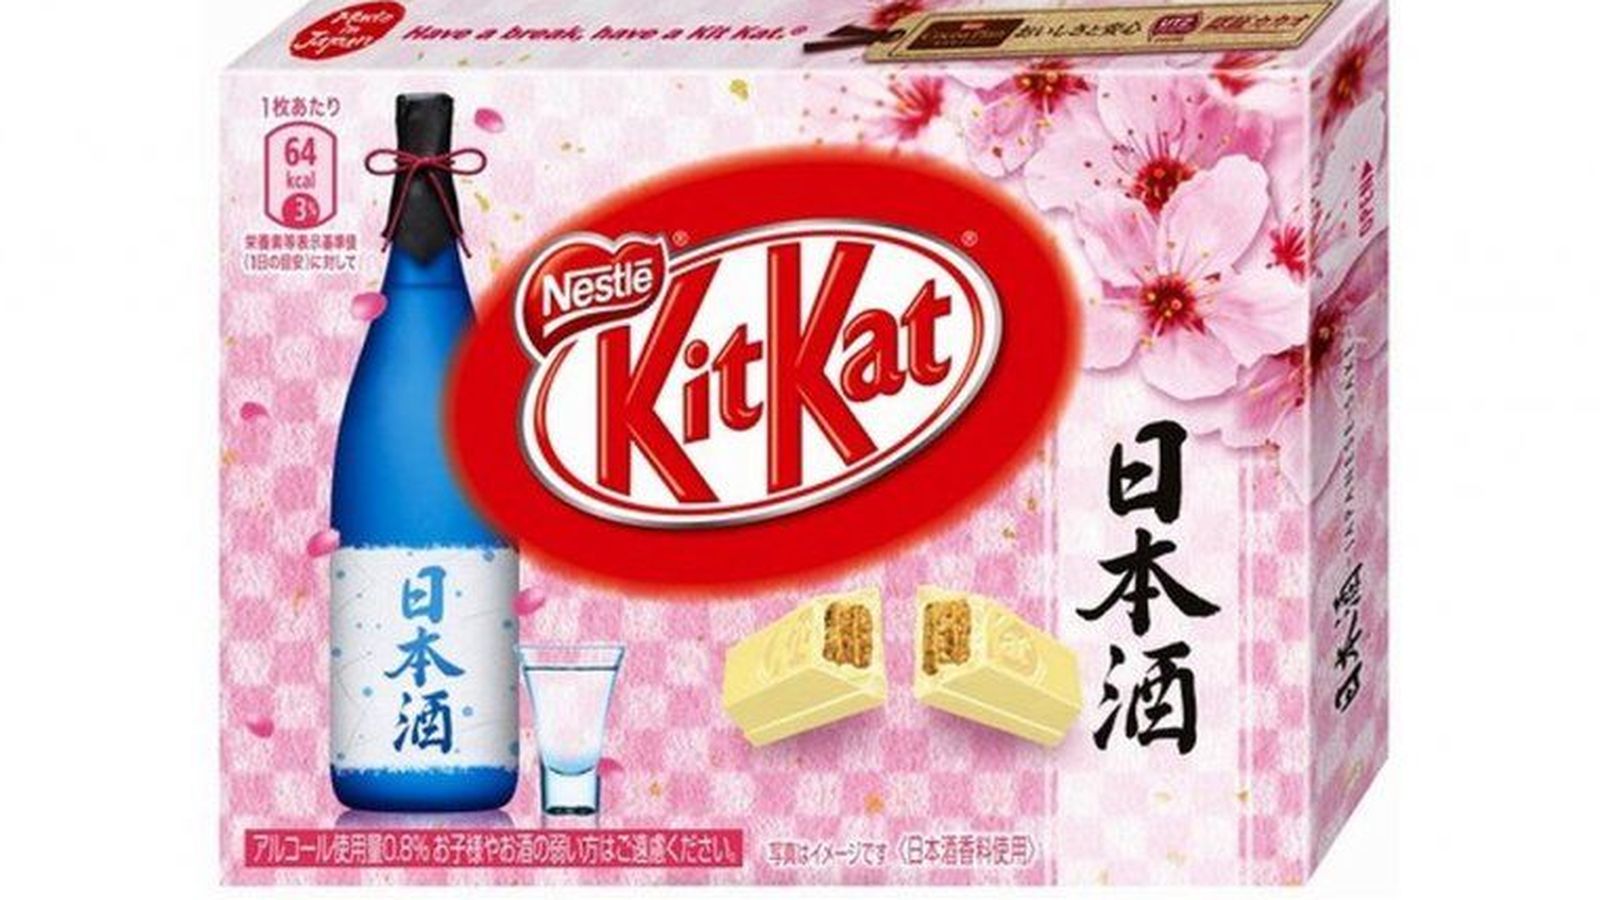 Foto: Nestlé ha puesto a la venta un Kit Kat con Sake en Japón. (EC)